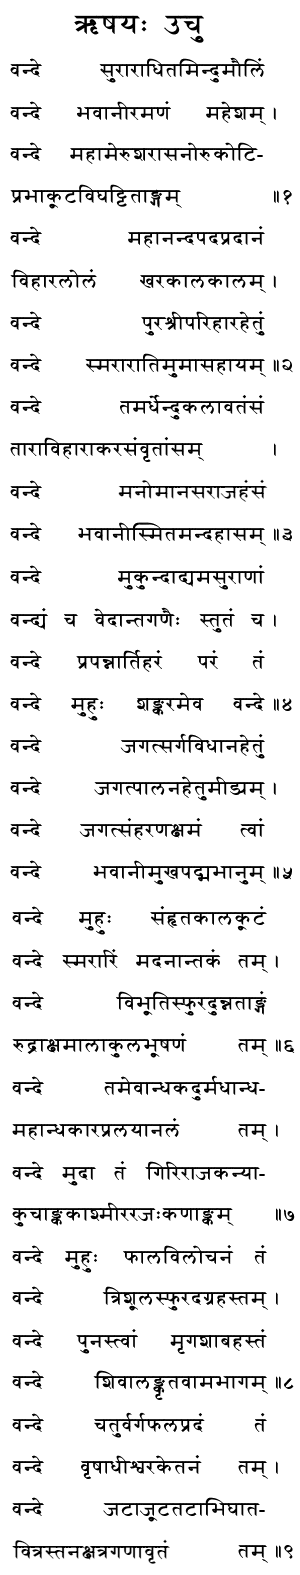 Shiv Shadakshar Stotram - Shiva Stotra, Shiva Stuti, Lord Shiva